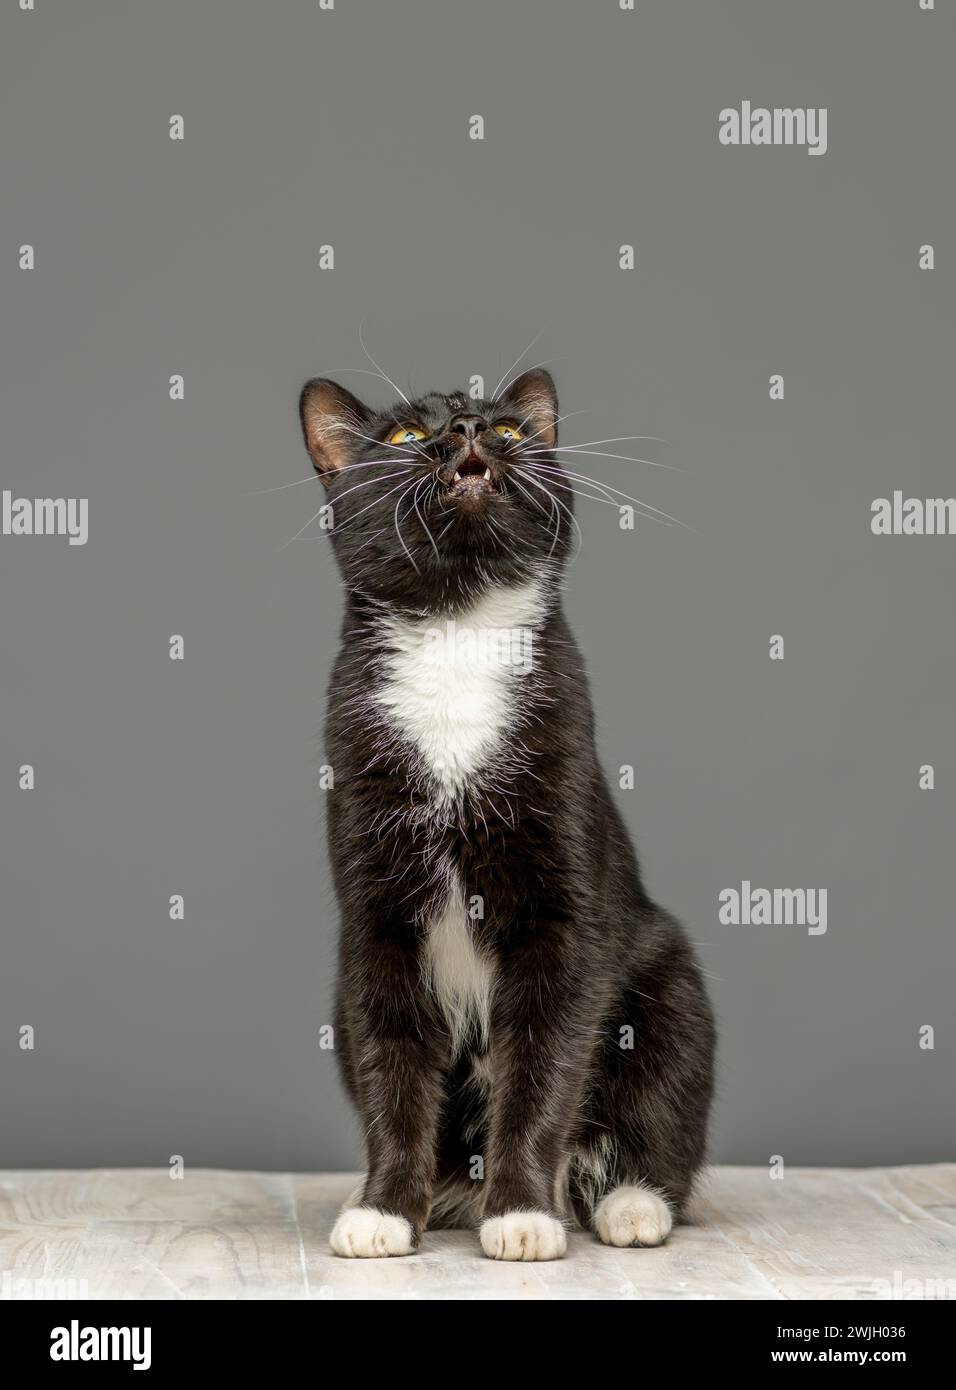 Photo studio d'un chat noir et blanc regardant vers le haut, assis sur une table blanchie à la chaux. Vu sur fond gris. Banque D'Images